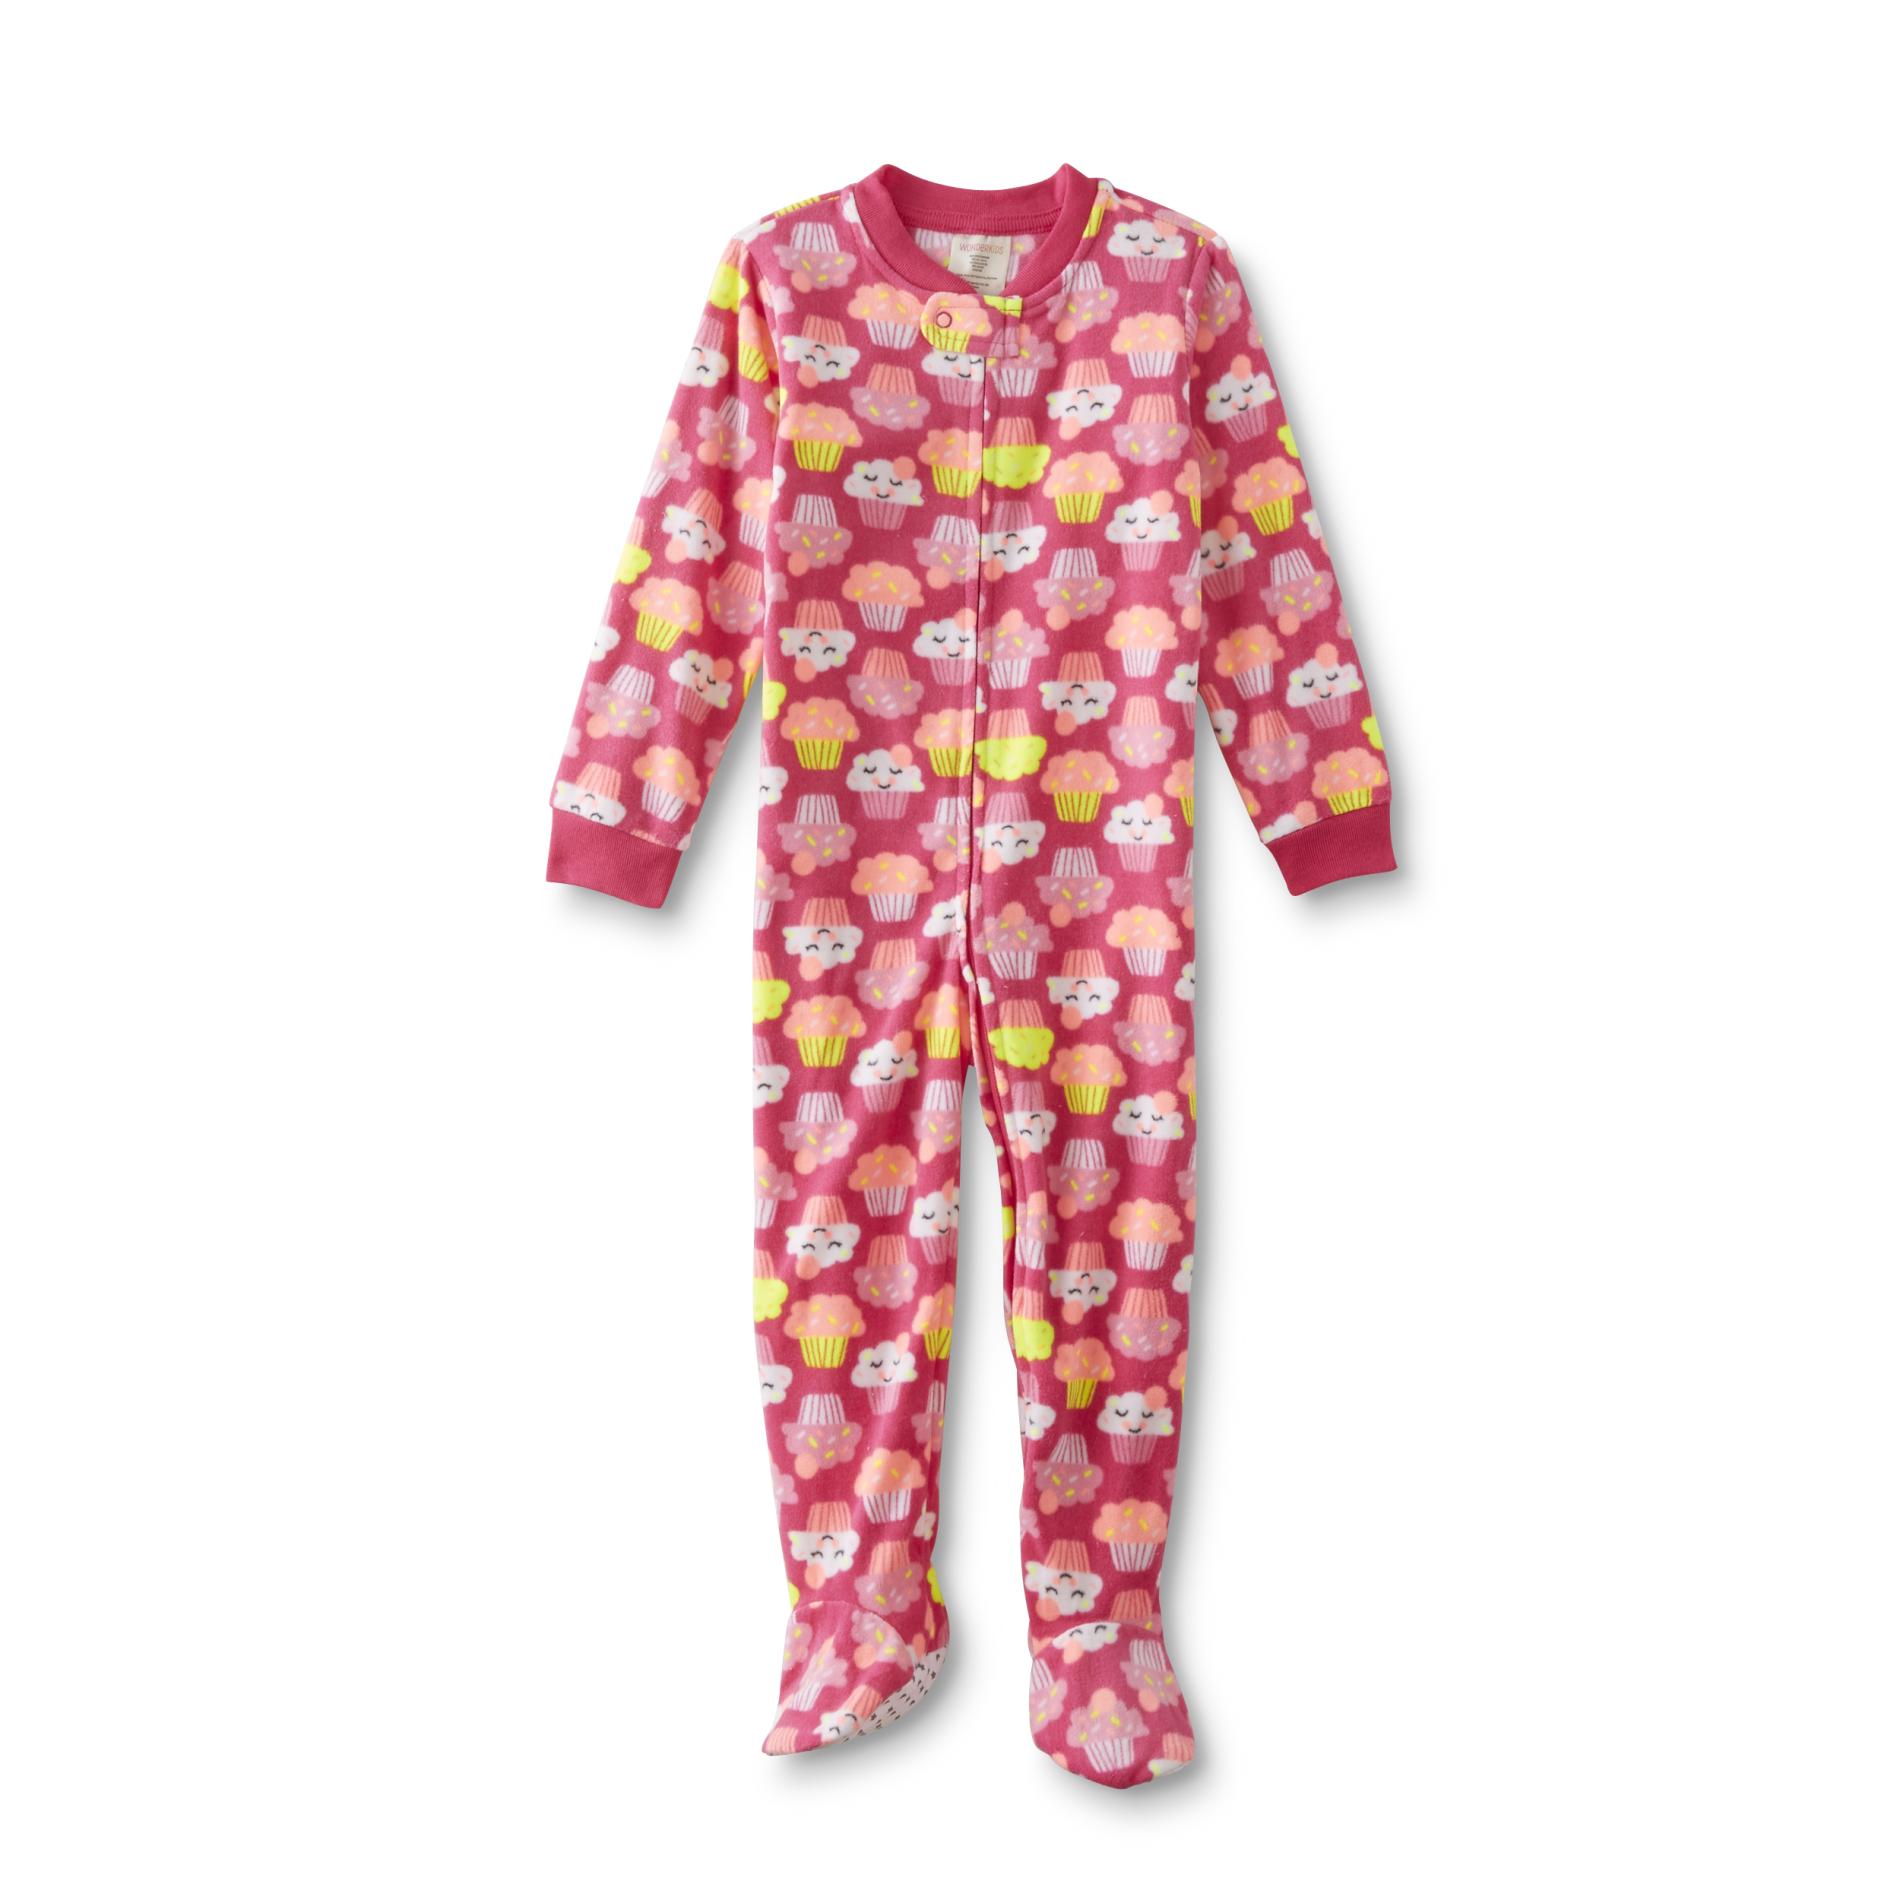 WonderKids Infant & Toddler Girls' Fleece Sleeper Pajamas - Cupcake